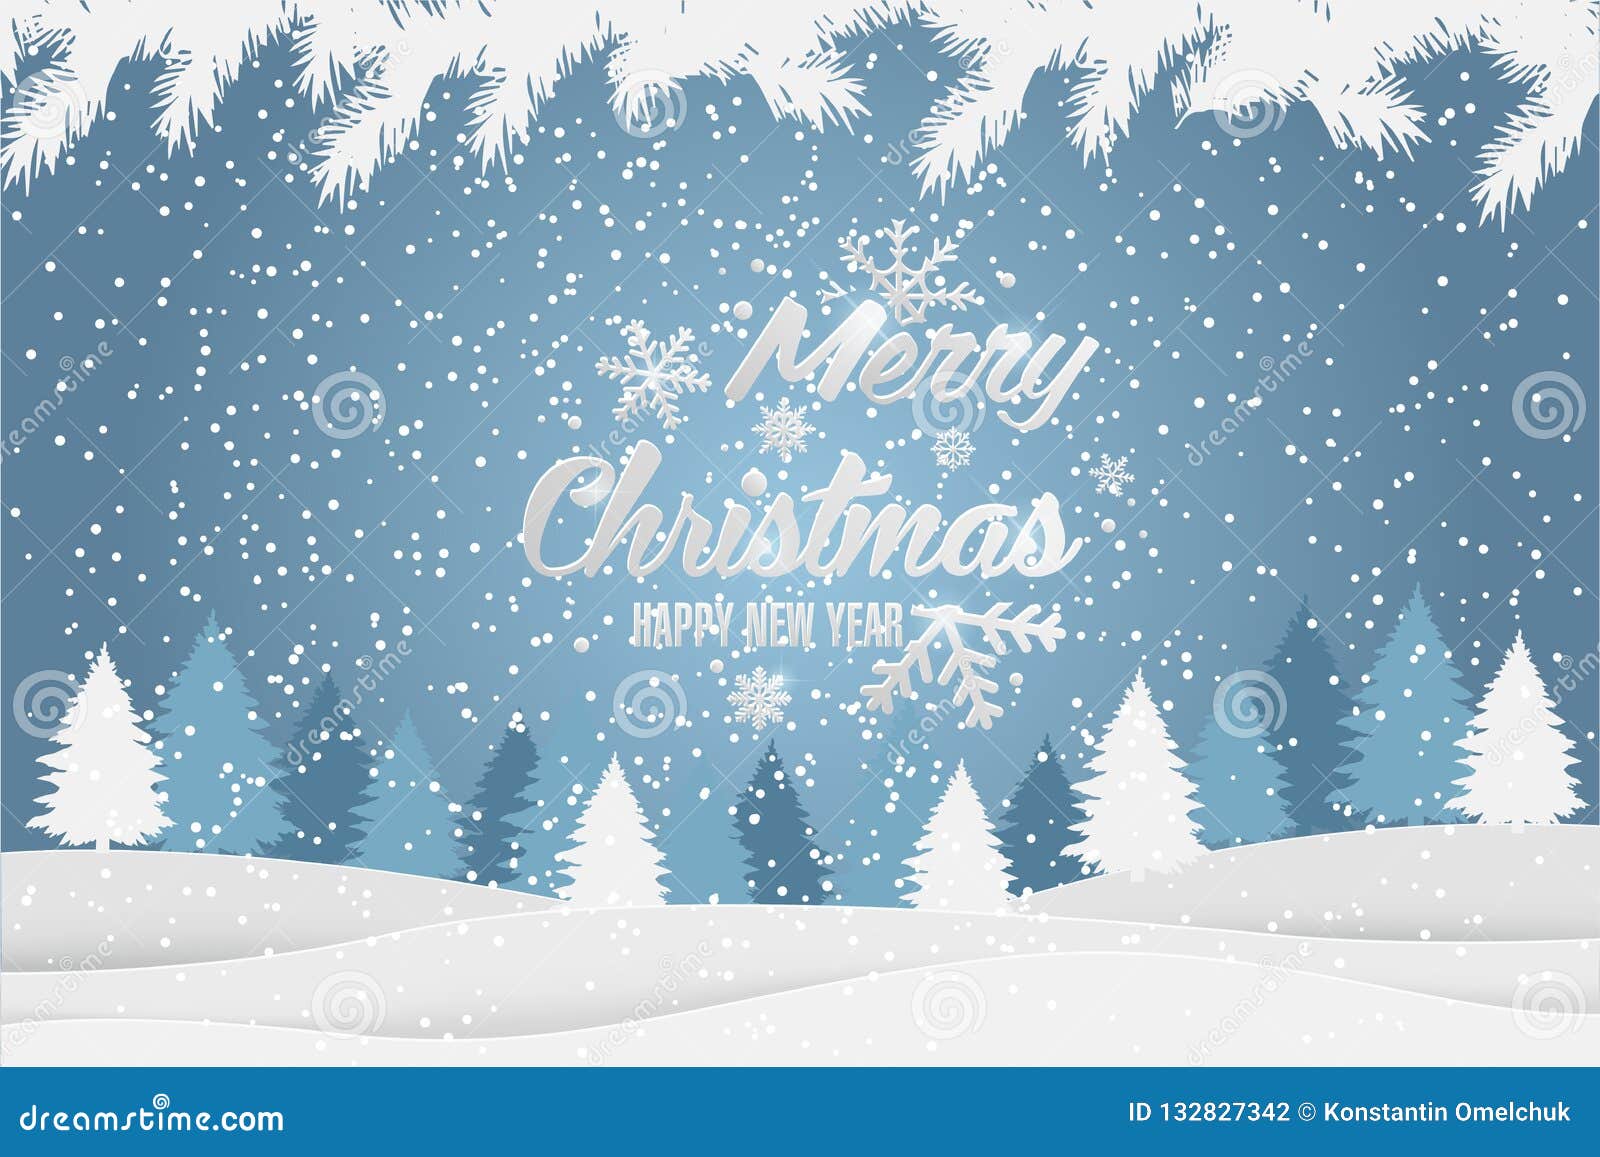 与冬天风景的圣诞节和新年印刷xmas背景圣诞快乐看板卡向量例证 插画包括有